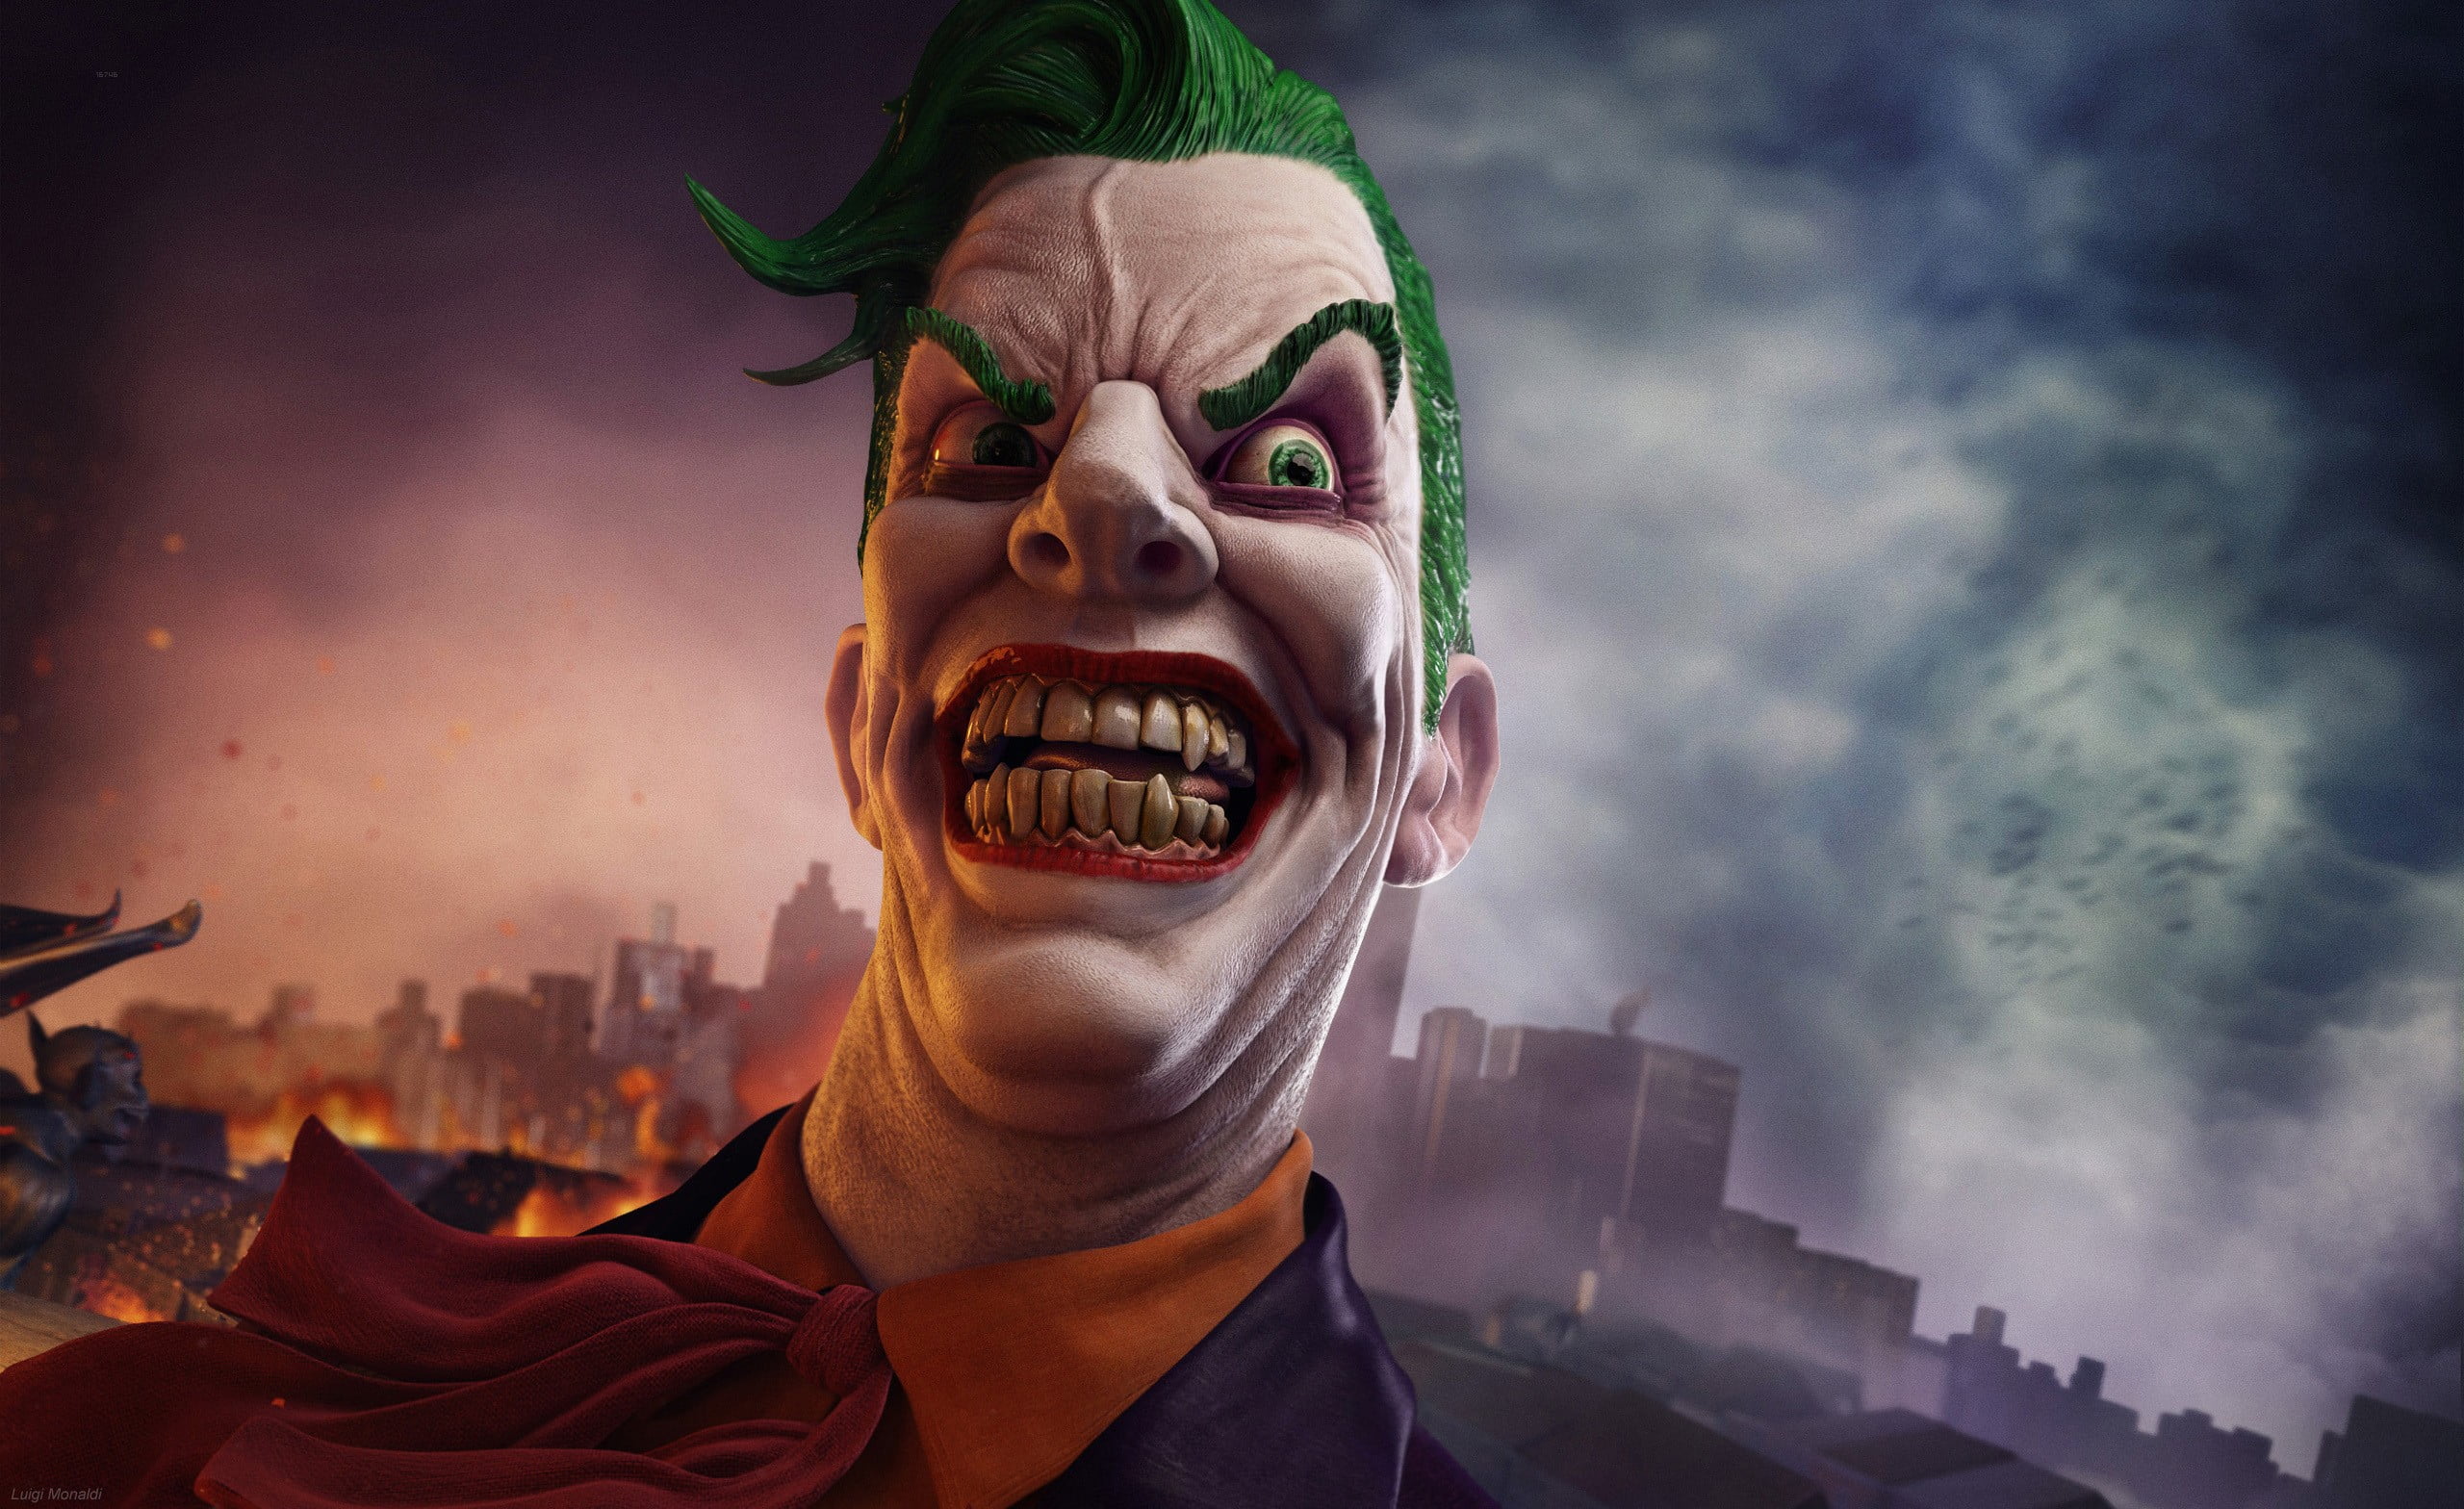 DC The Joker illustration, Joker